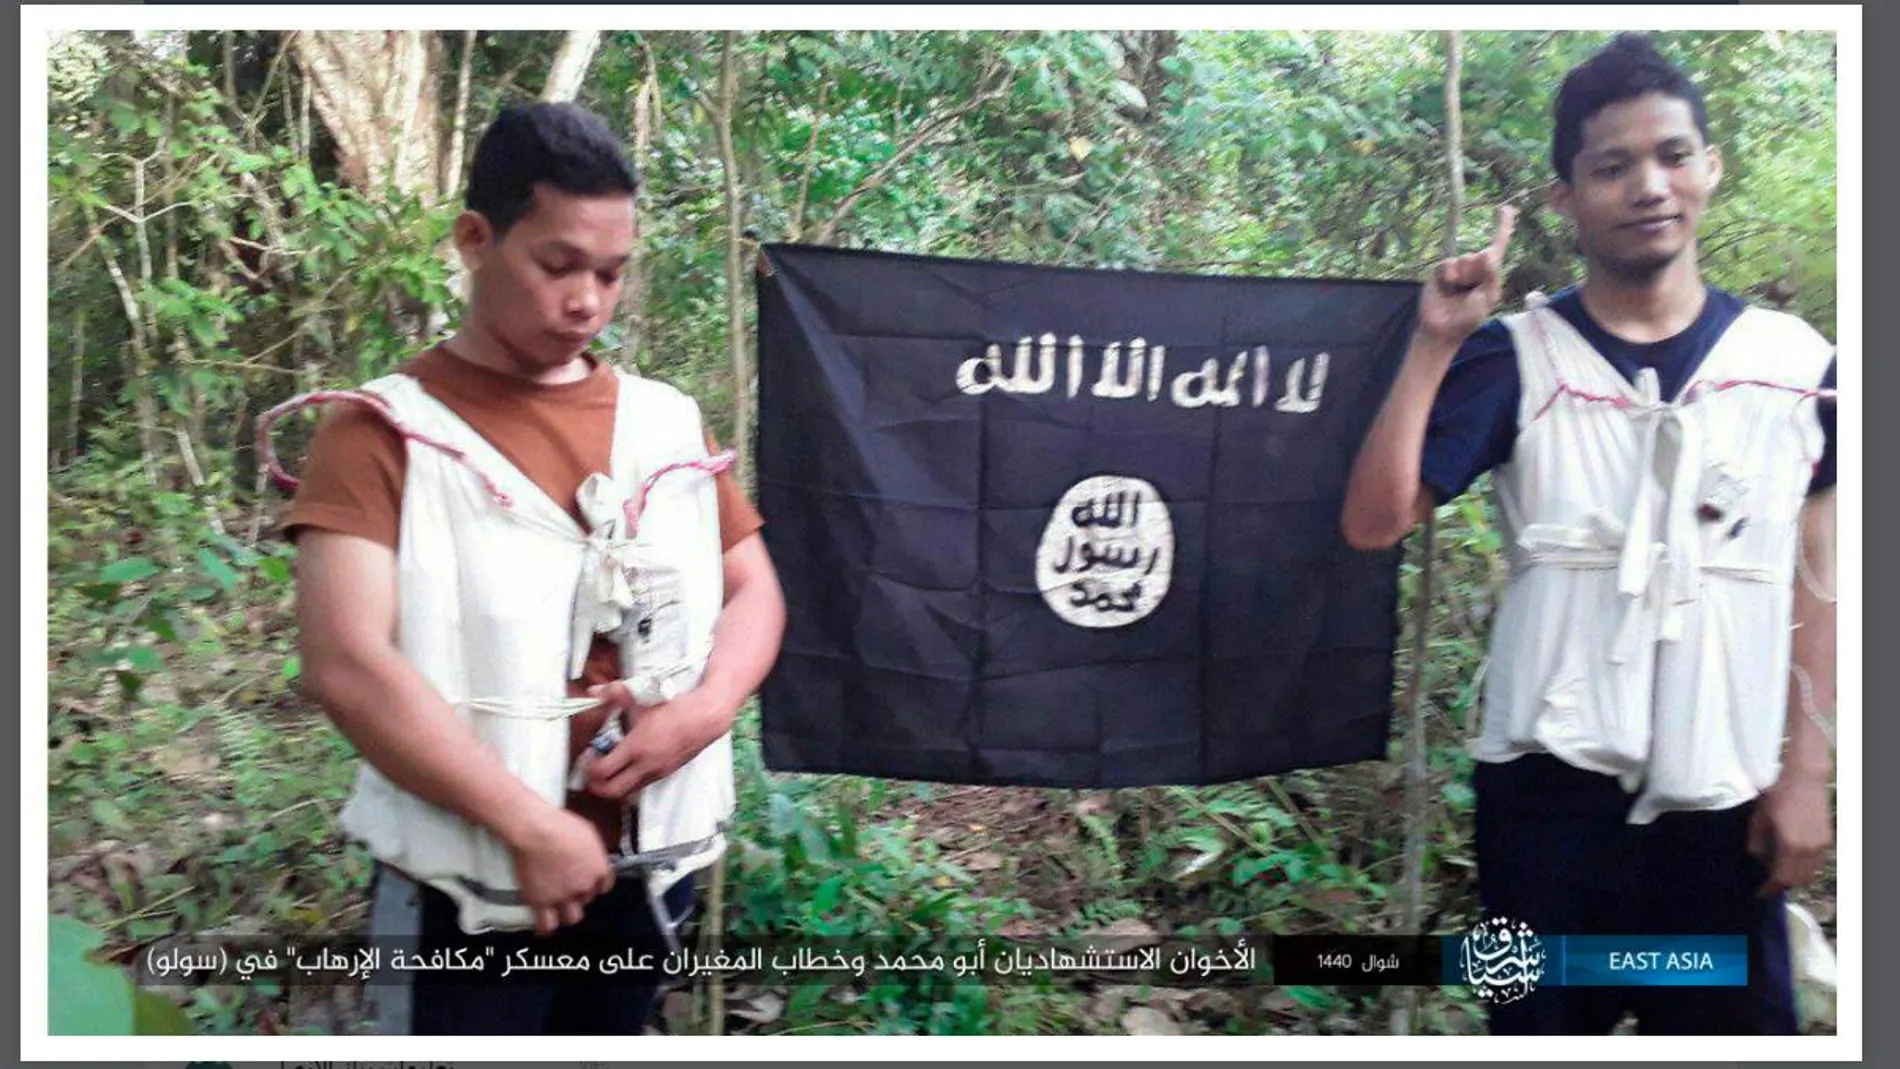 Abu Muhannad y Abu Khattab, los dos individuos que cometieron un atentado contra un cuartel militar en Filipinas